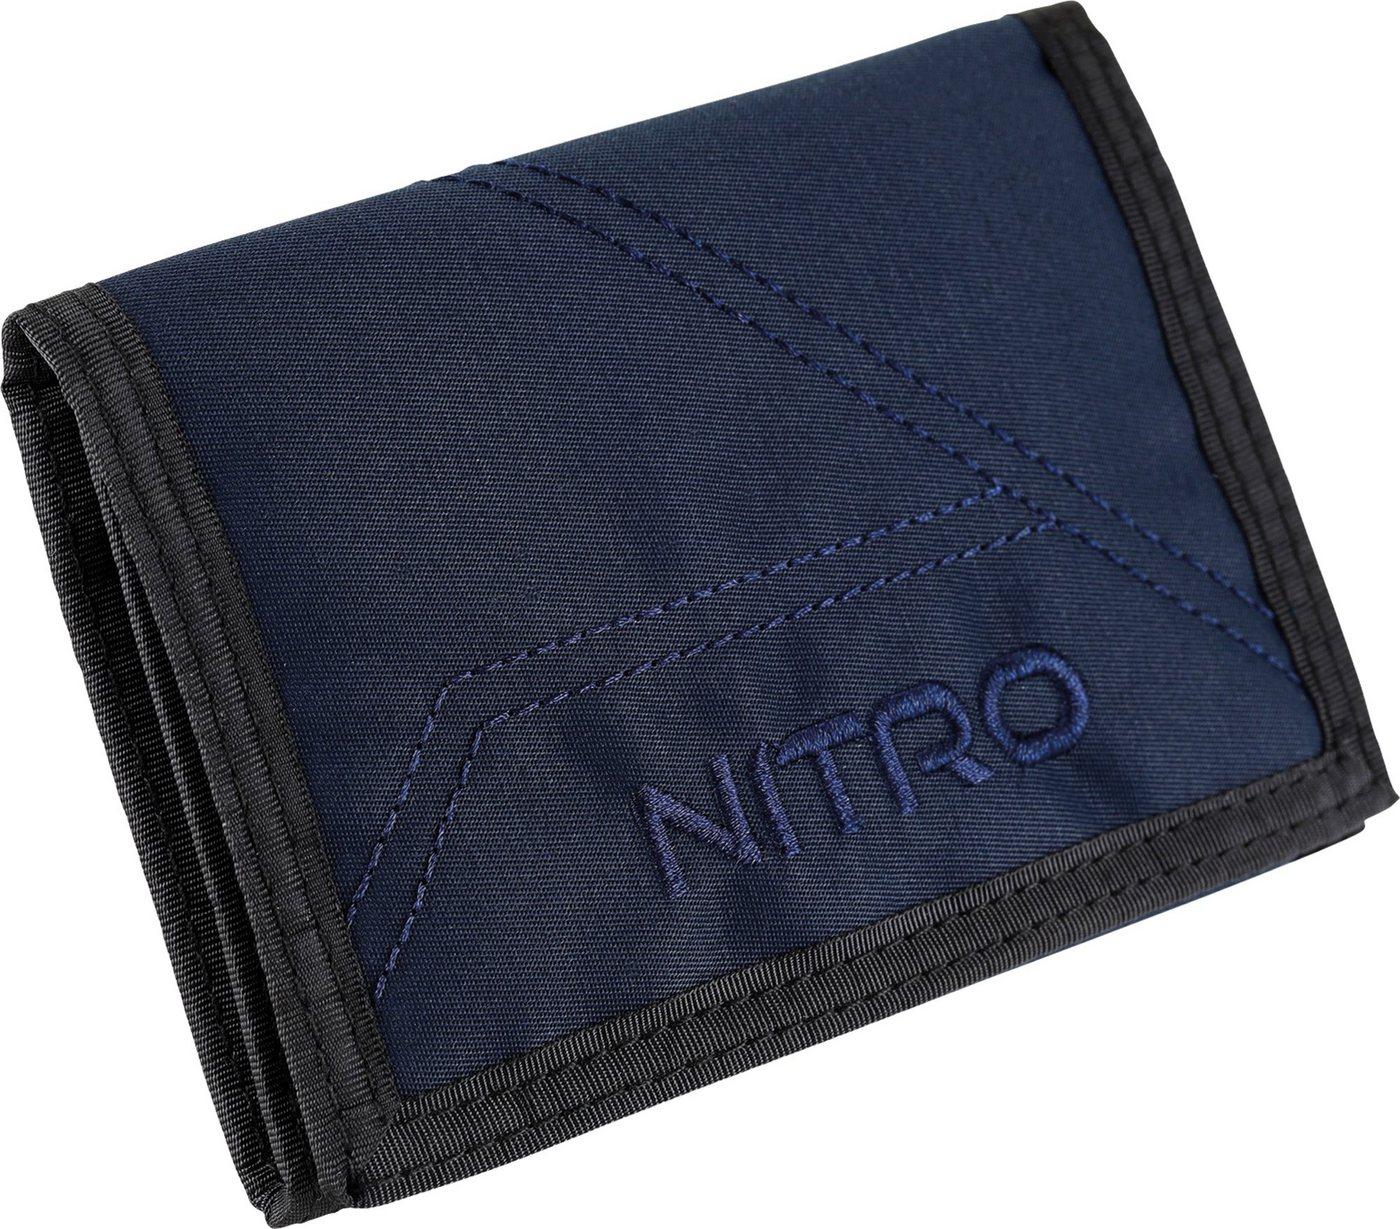 NITRO Geldbörse Wallet, Geldbeutel, Wallet, Portmonaie, Etui für Scheine und Münzen, blau